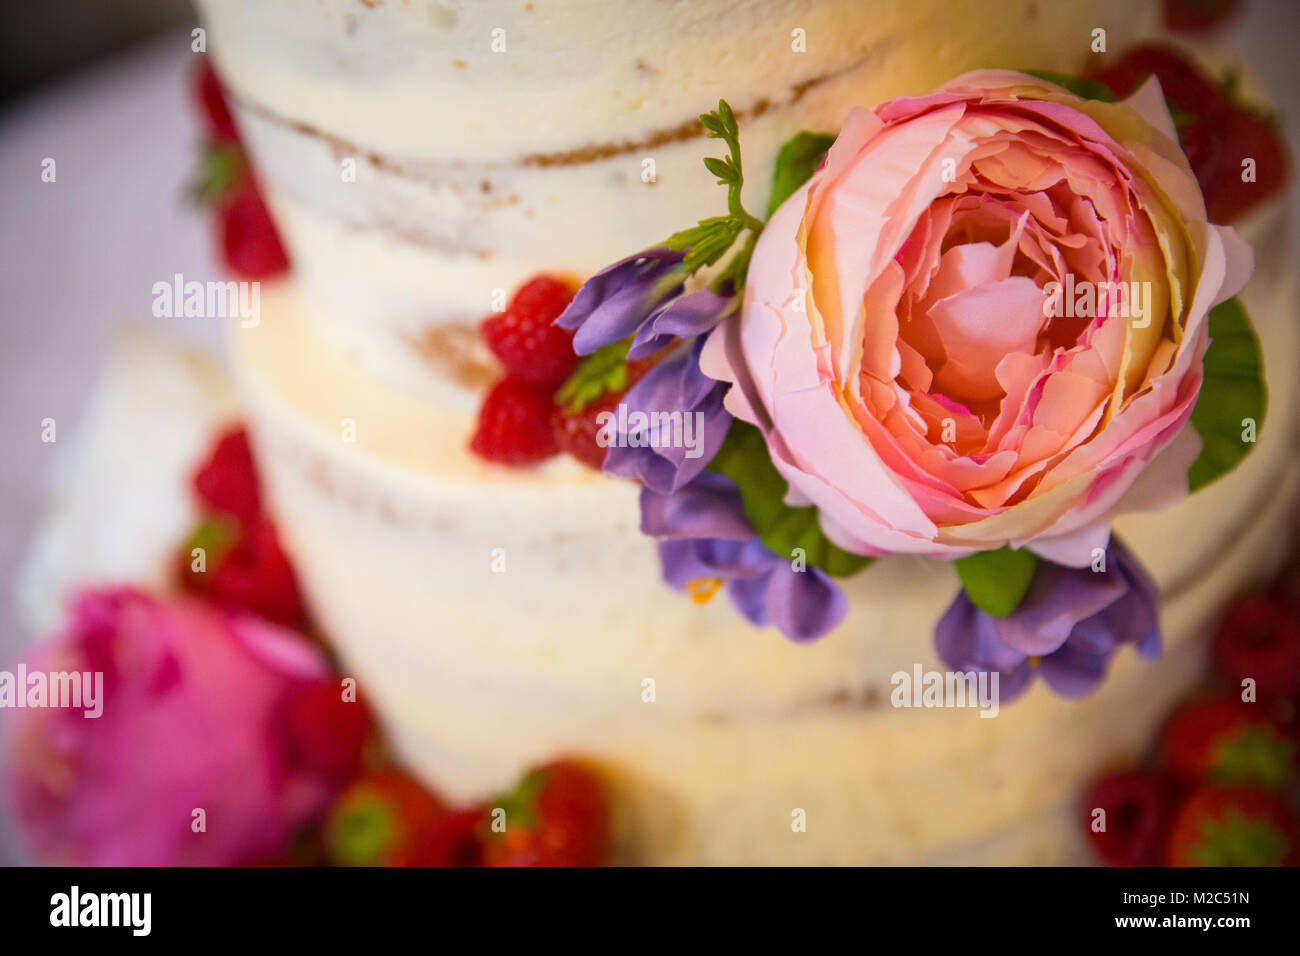 Des fleurs fraîches et des fruits sur les niveaux gâteau de célébration, close-up Banque D'Images